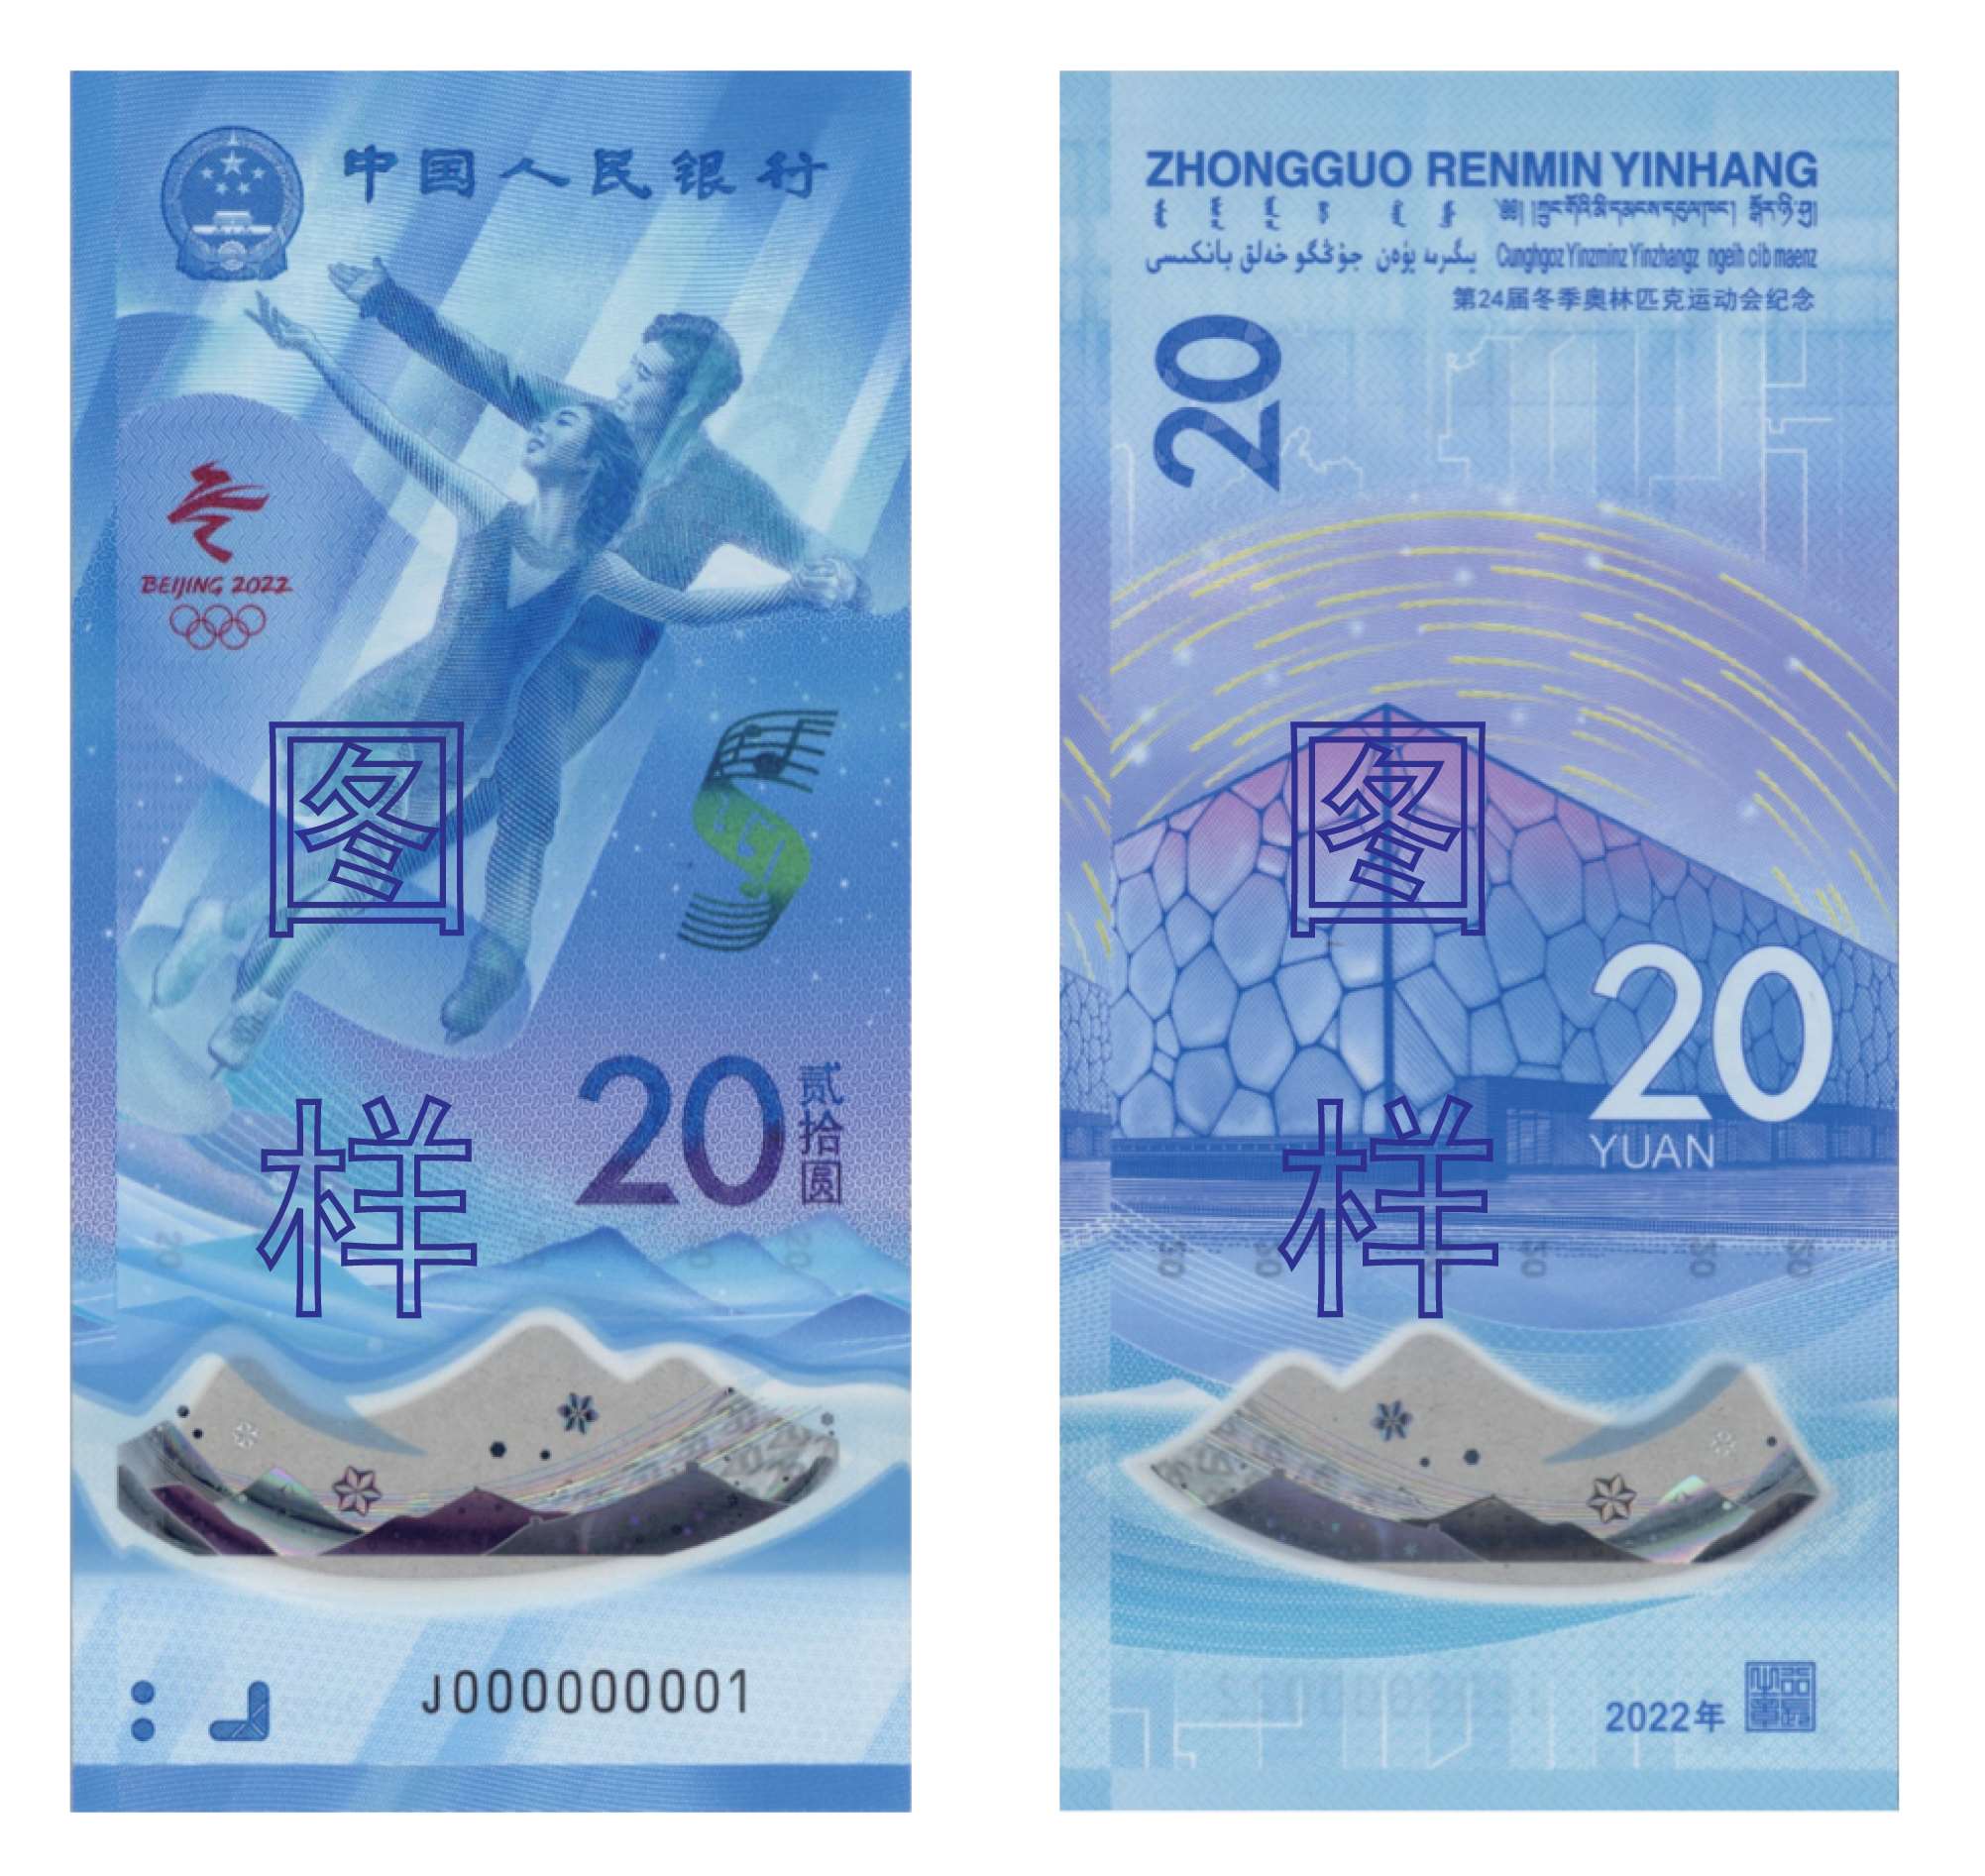 第24届冬季奥林匹克运动会 冰上运动 纪念钞 2021